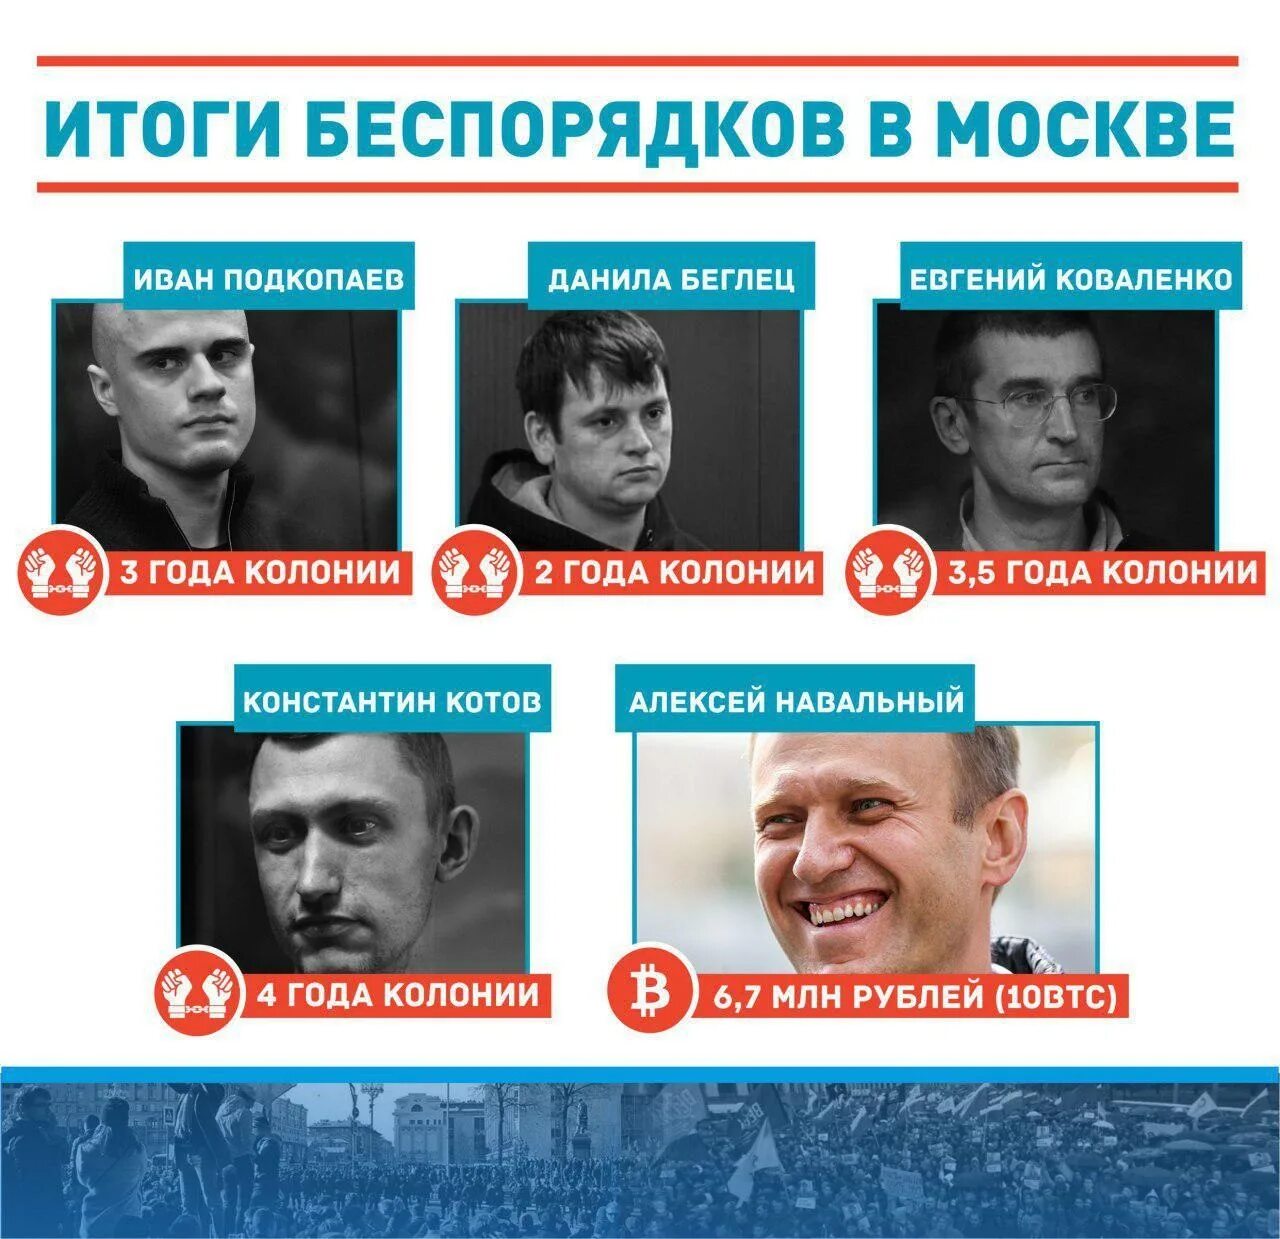 Навальный. Навальный фото. Навальный мразь